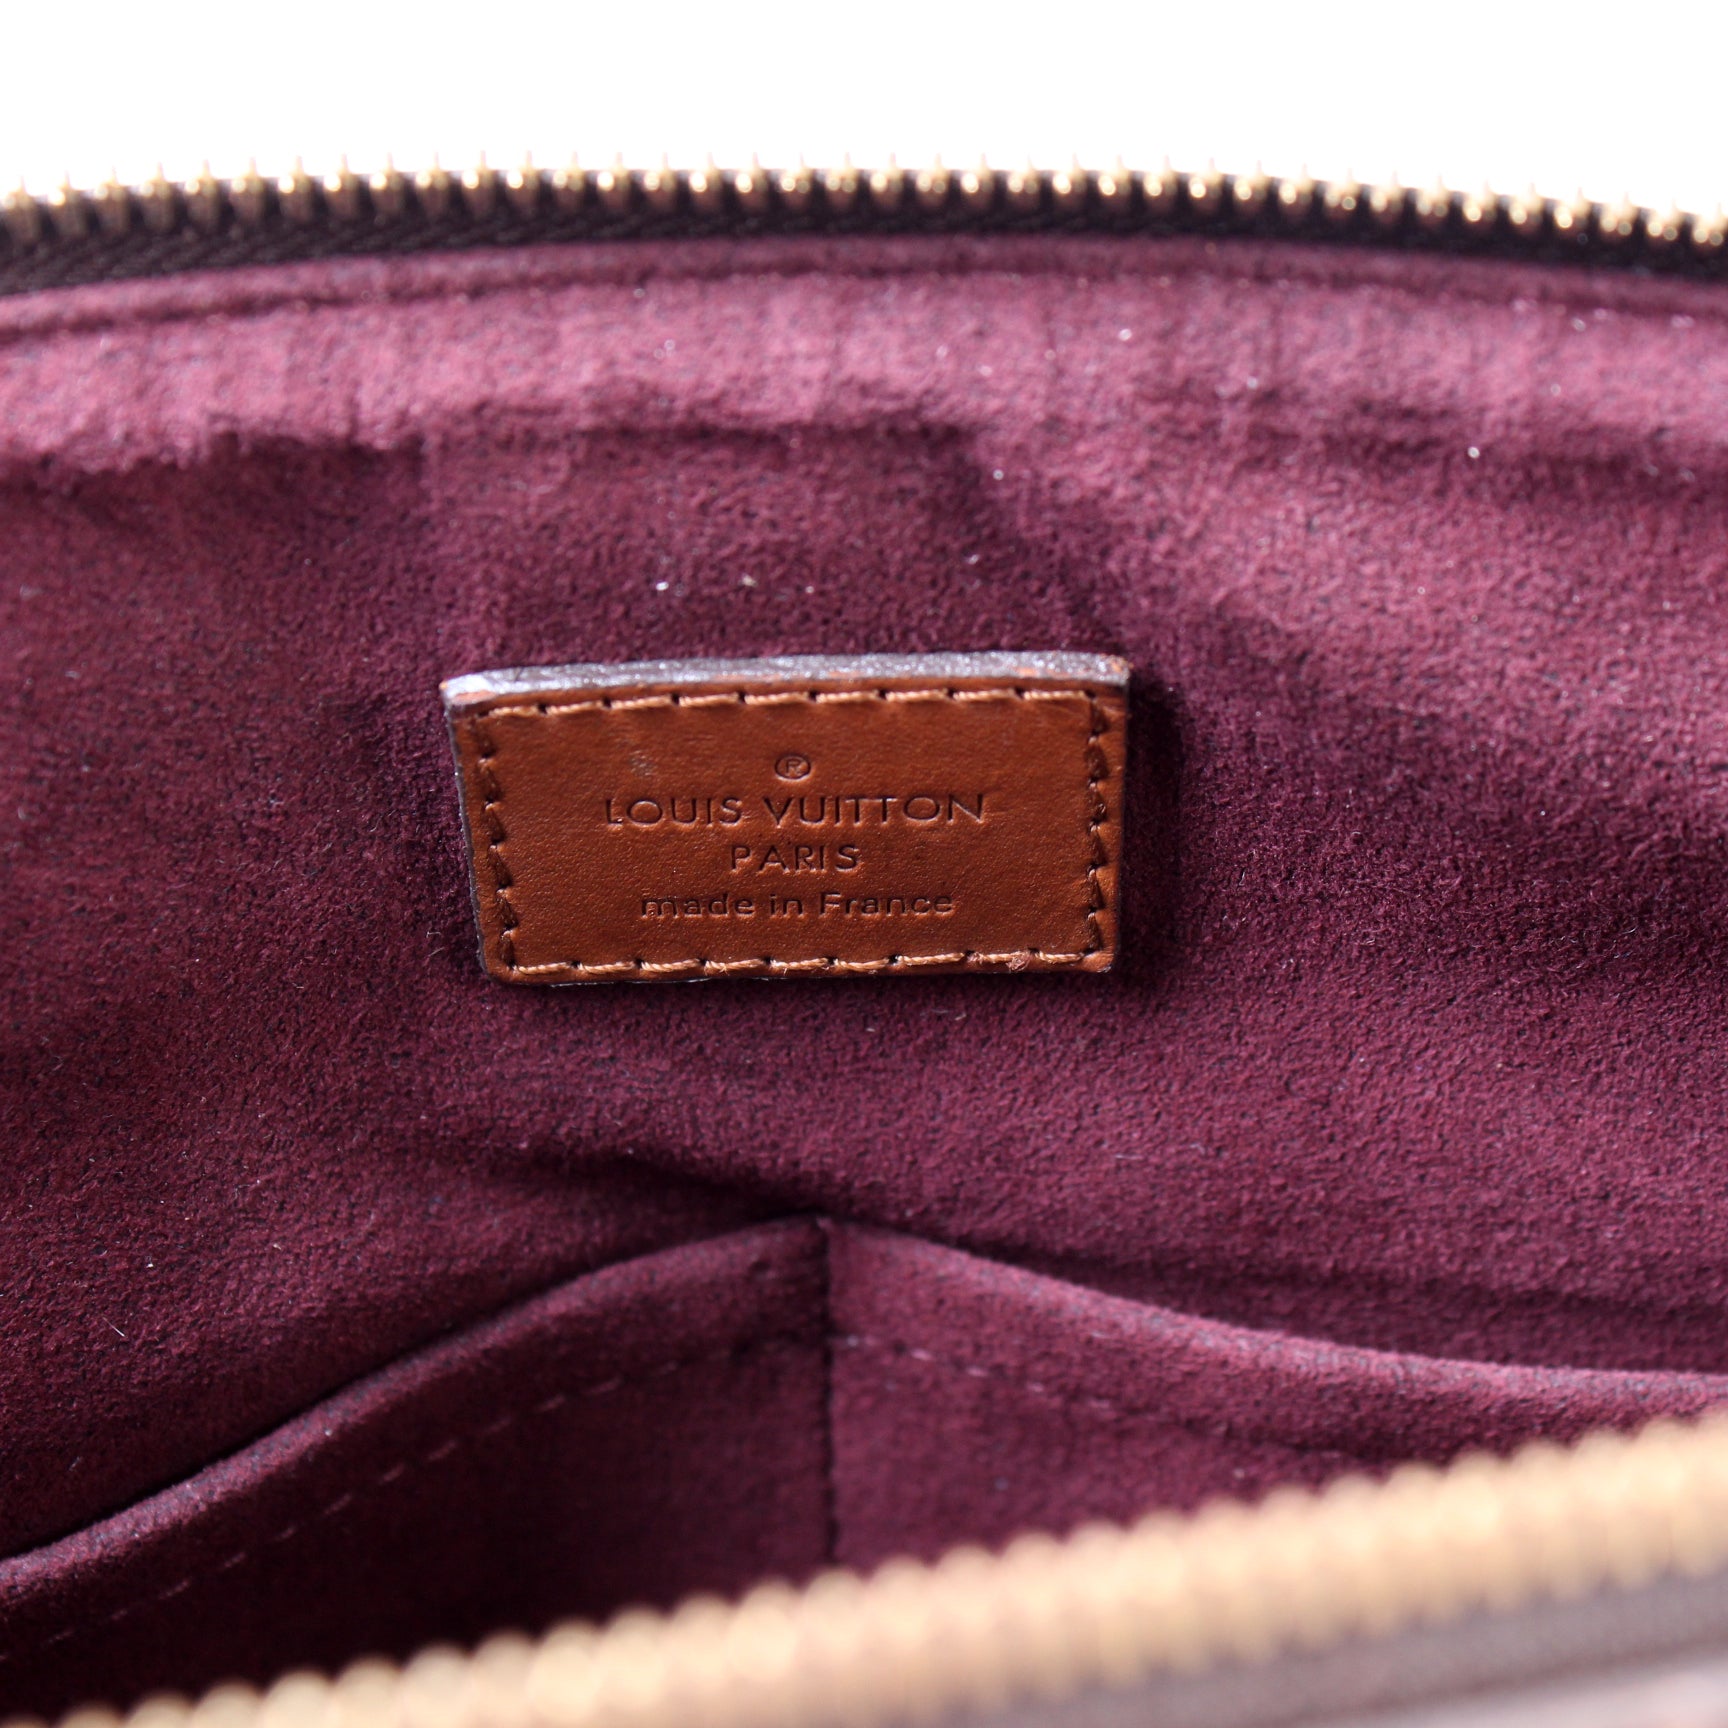 Belmont PM Damier Ebene – Keeks Designer Handbags